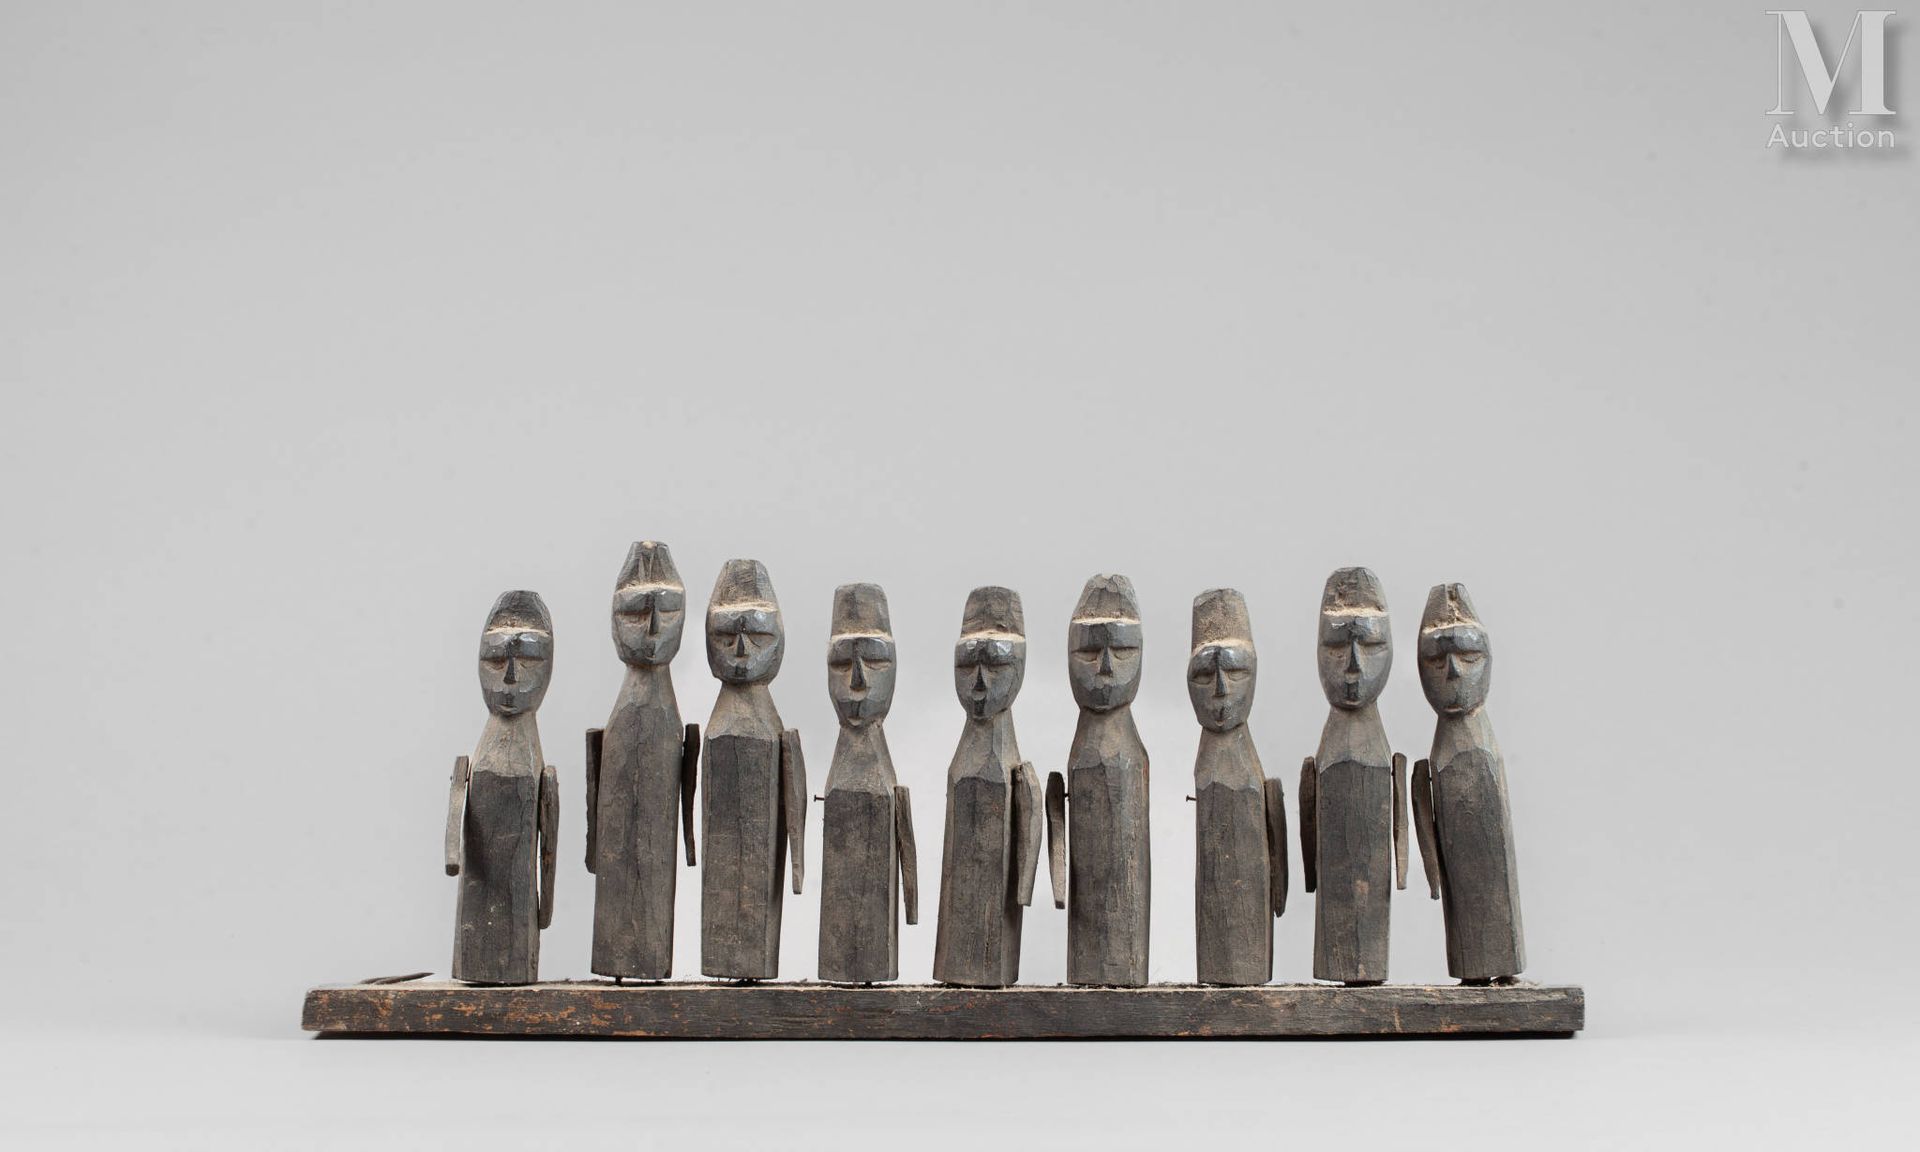 Figure rituelle con nueve figuras estilizadas. 
Madera patinada marrón.
Naga, no&hellip;